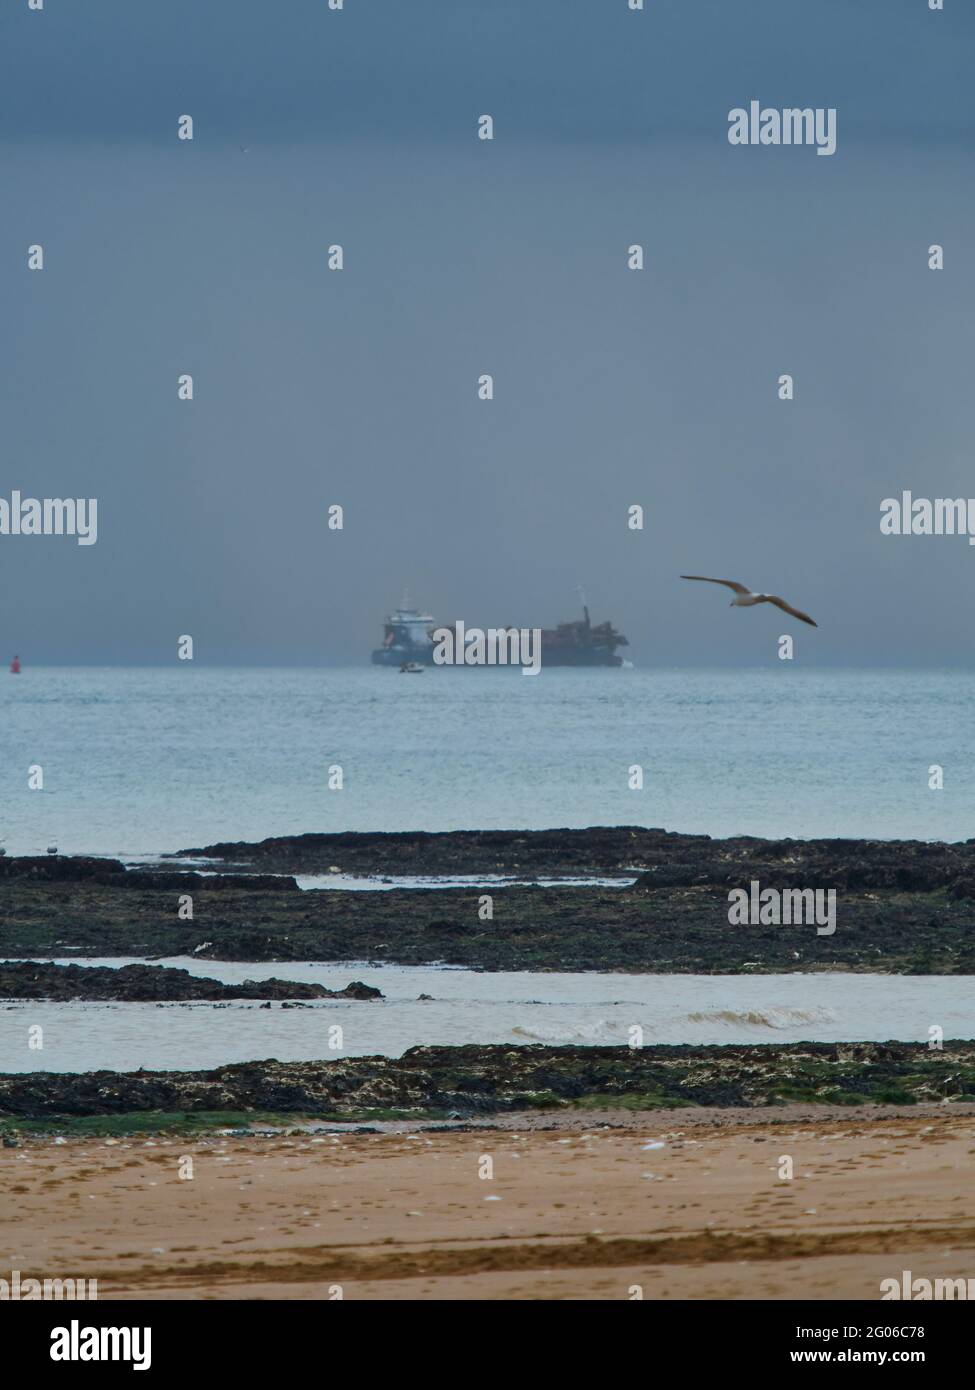 Une vue imprenable depuis la plage de Broadtairs, avec un énorme bateau à conteneurs à l'horizon et un goéland qui s'envolent sur l'aile pour apporter vie et mouvement. Banque D'Images